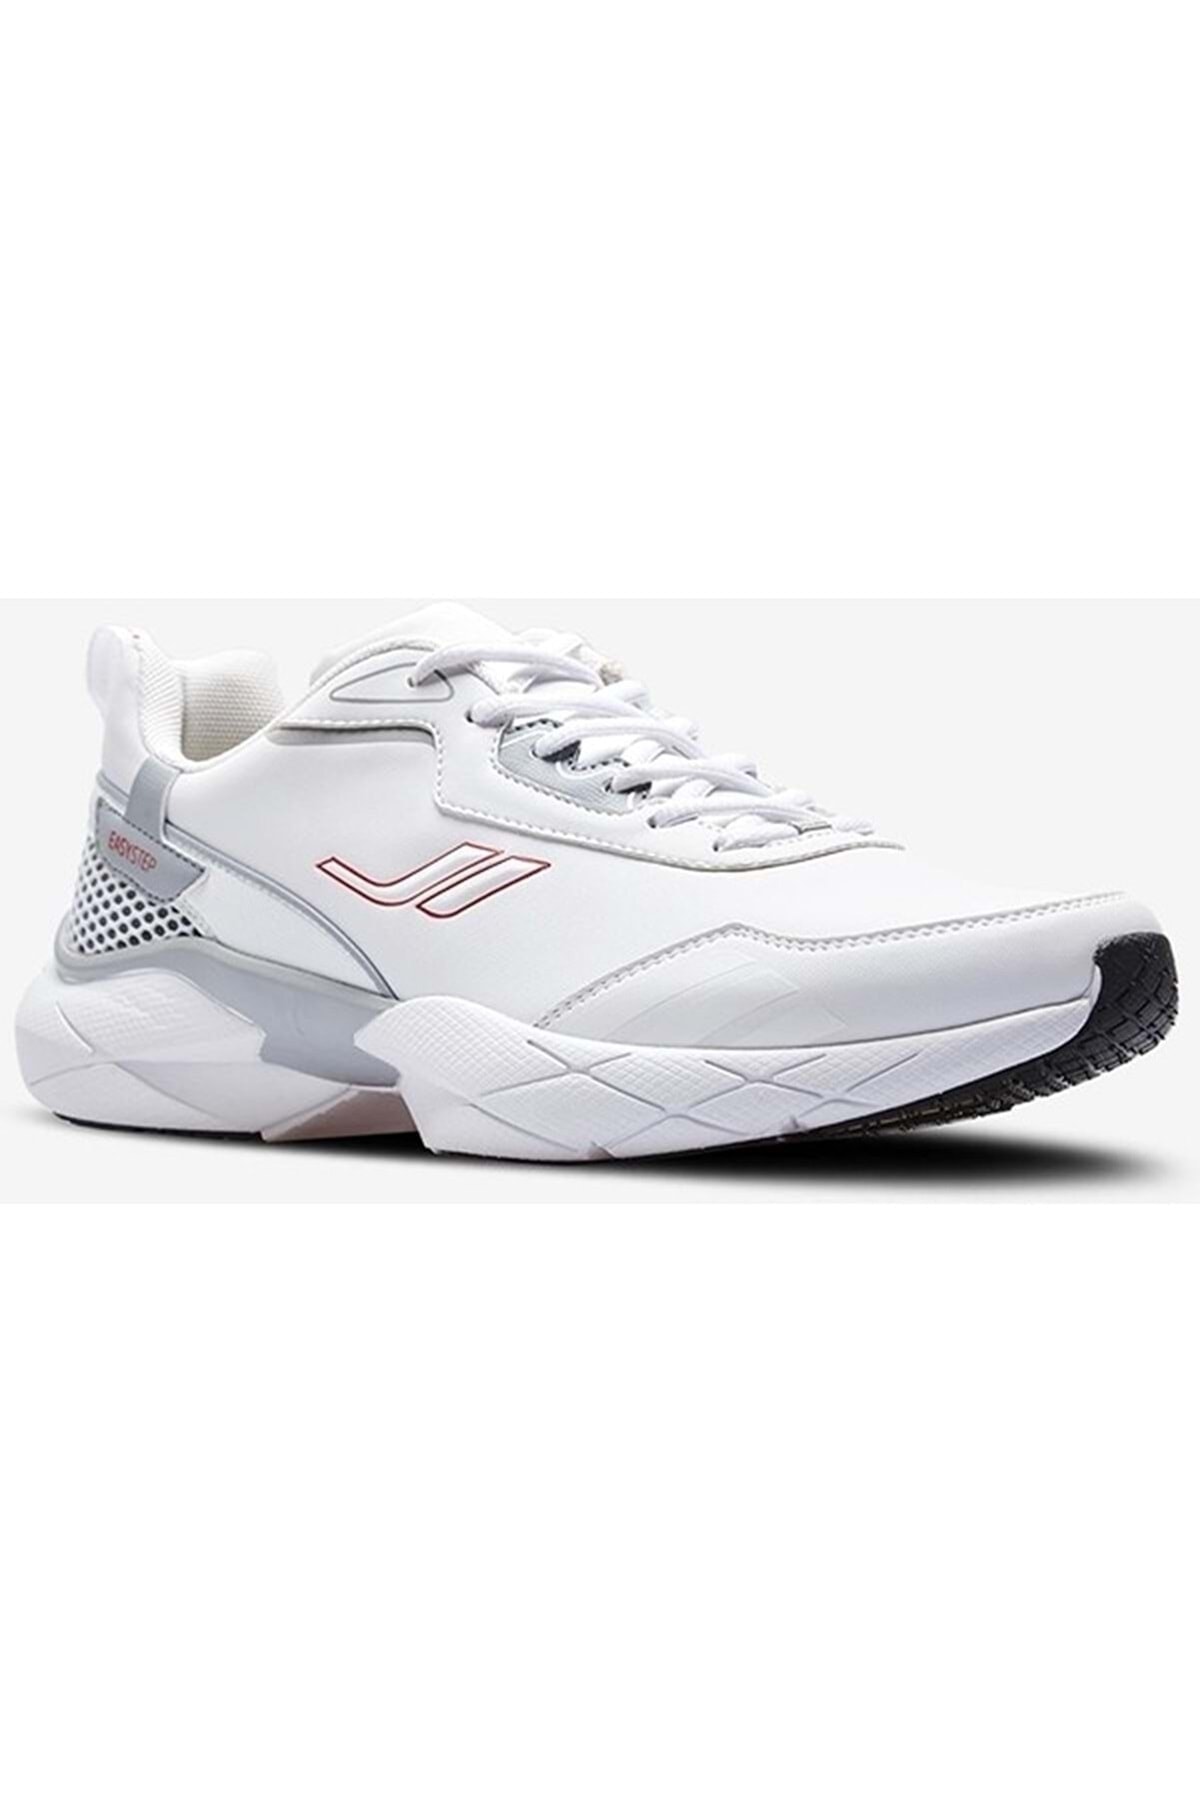 Lescon 0597 Easystep Erkek Spor Ayakkabı - Btmk00597-beyaz-43